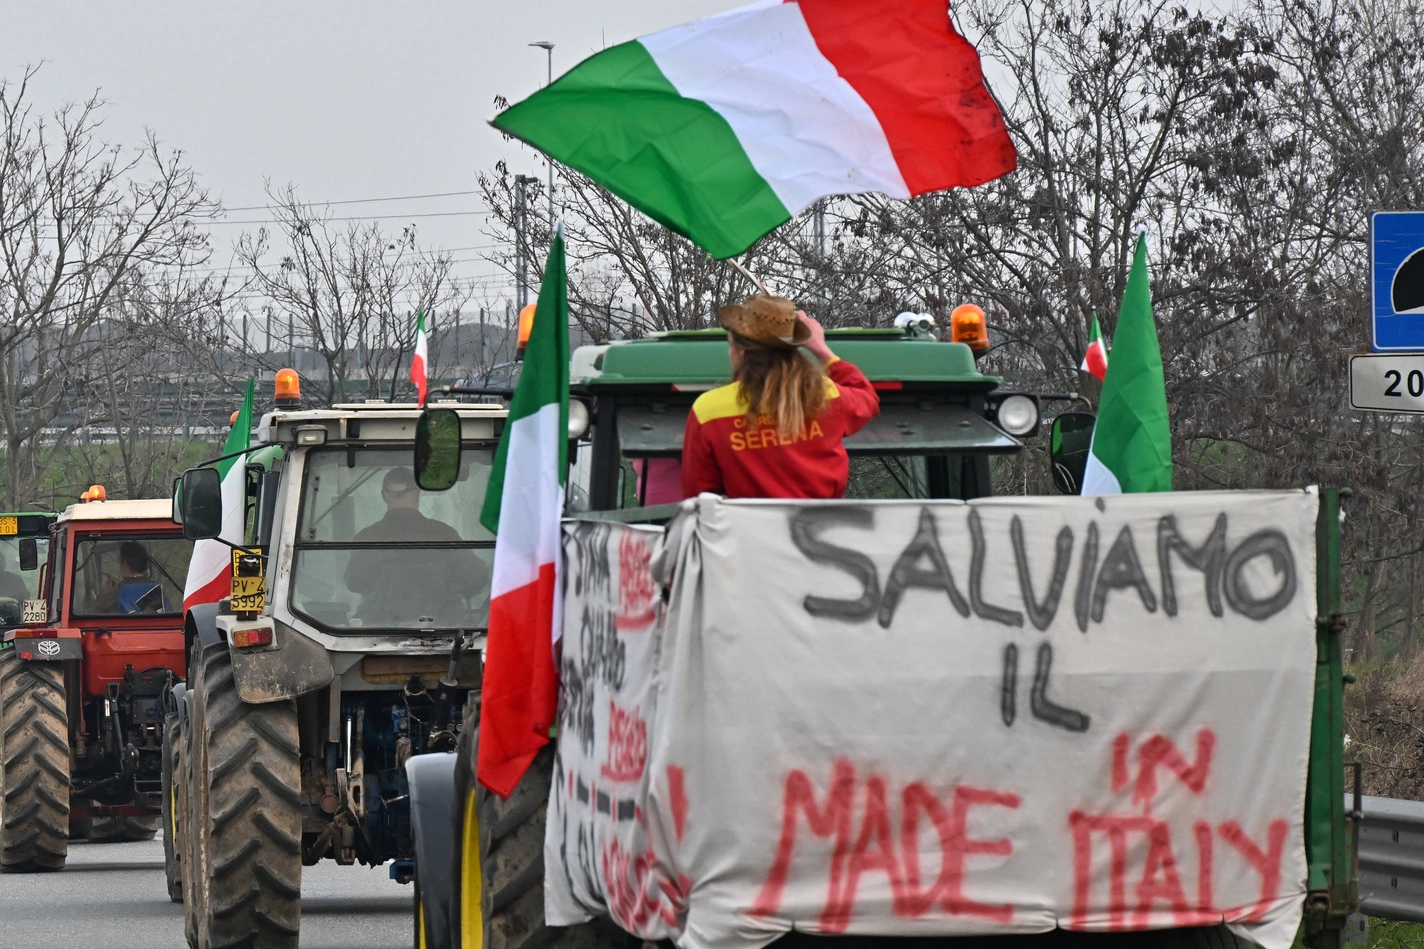 La protesta degli agricoltori con i loro trattori organizzata vicino al casello dell’autostrada